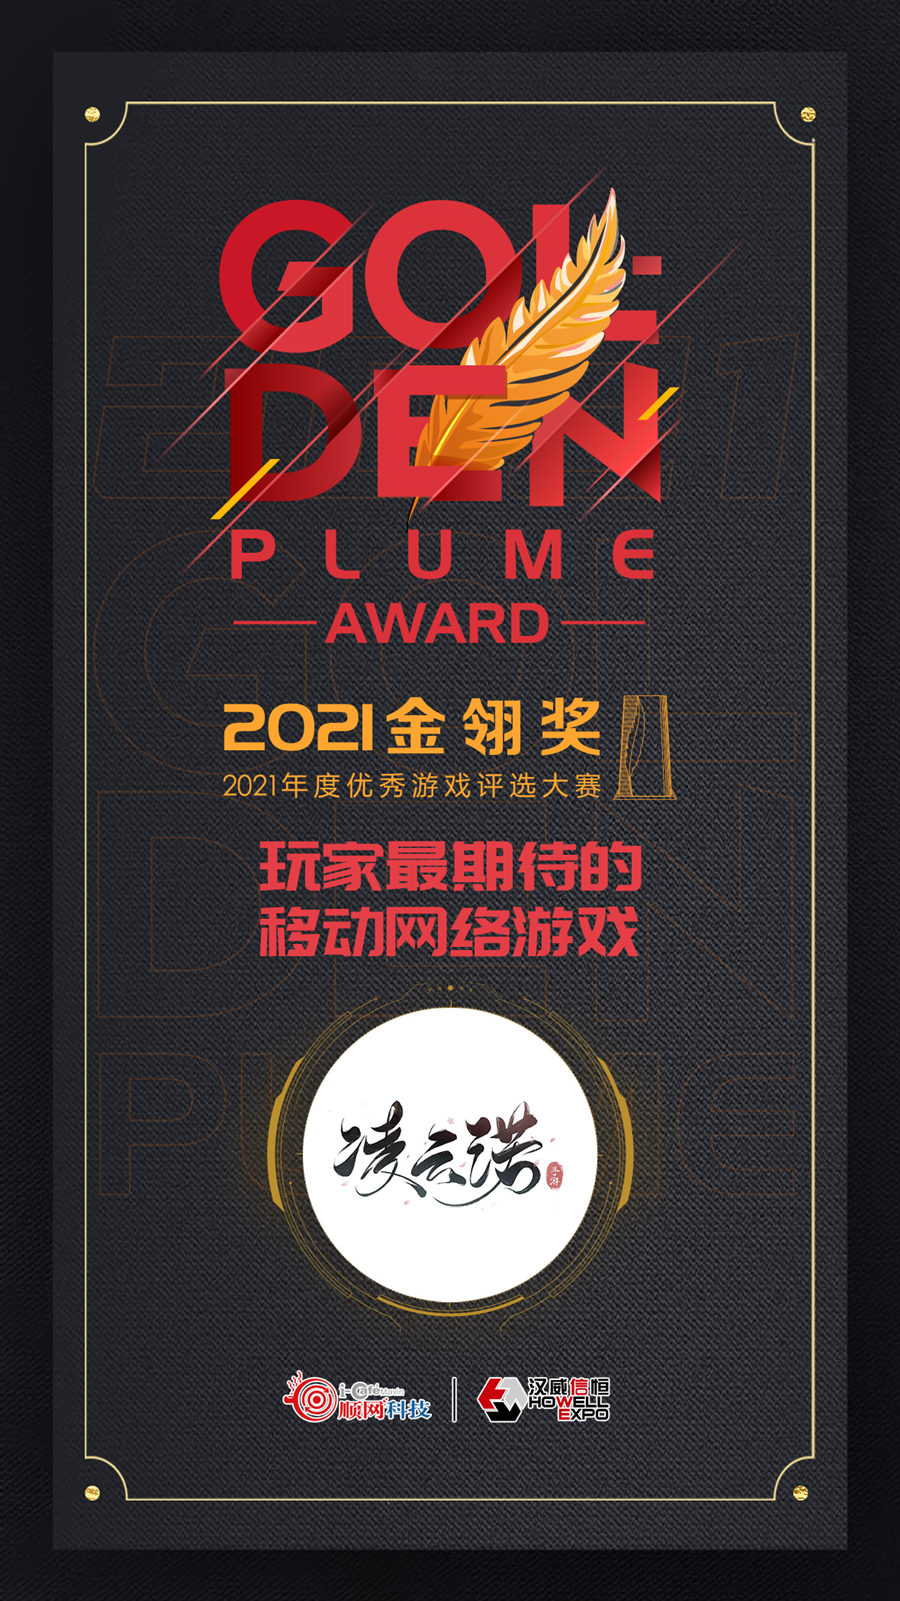 载誉而归，不负众望《凌云诺》获选2021金翎奖“玩家最期待的移动网络游戏”奖项 - 第2张